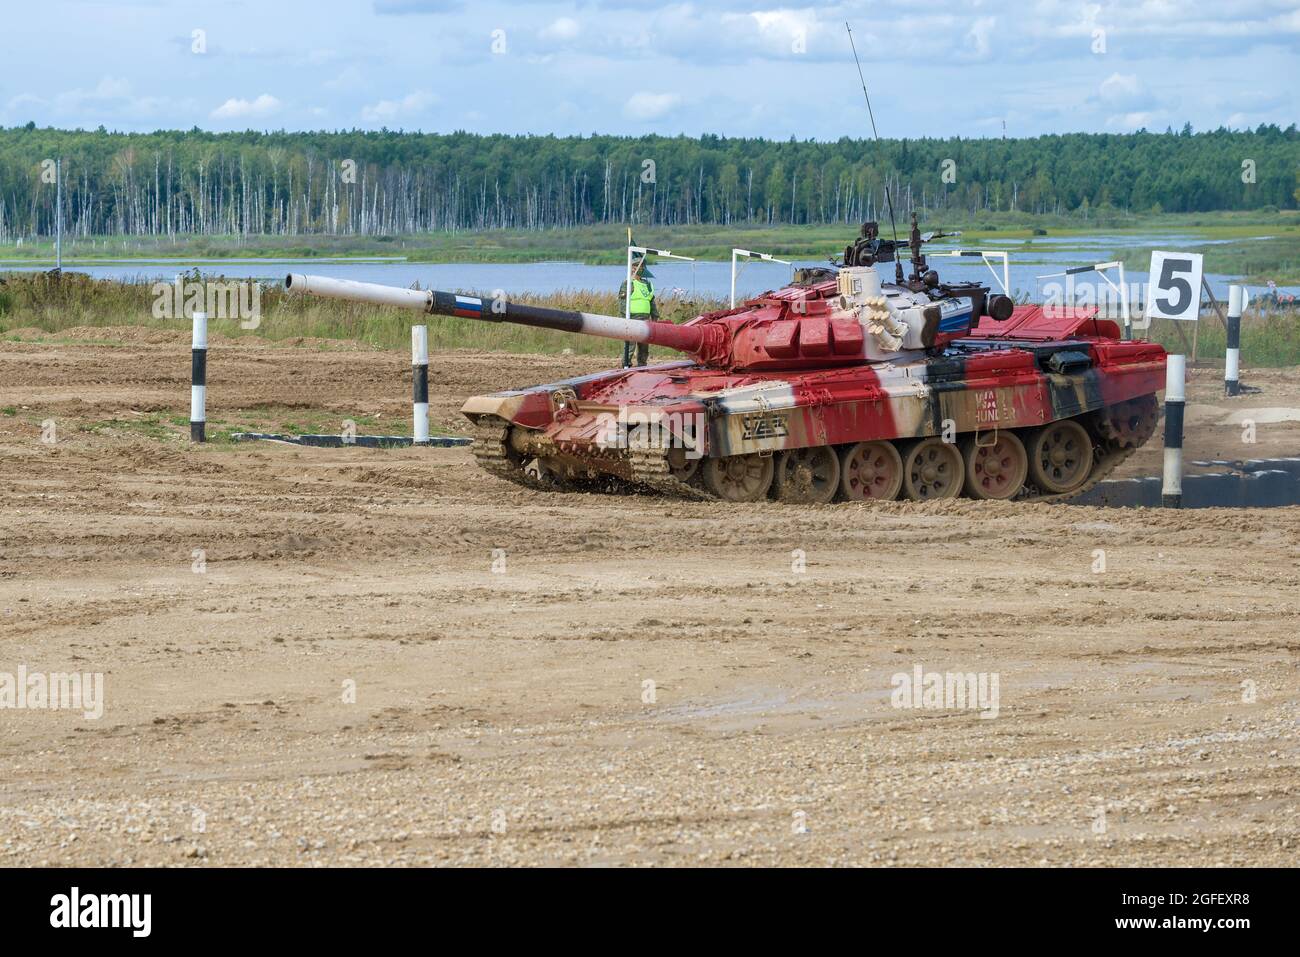 ALABINO, RUSSIE - 27 AOÛT 2021 : Tank T-72B3 l'équipe militaire russe sur la piste de biathlon Tank. Jeux de guerre internationaux. Terrain d'entraînement d'Alabino Banque D'Images